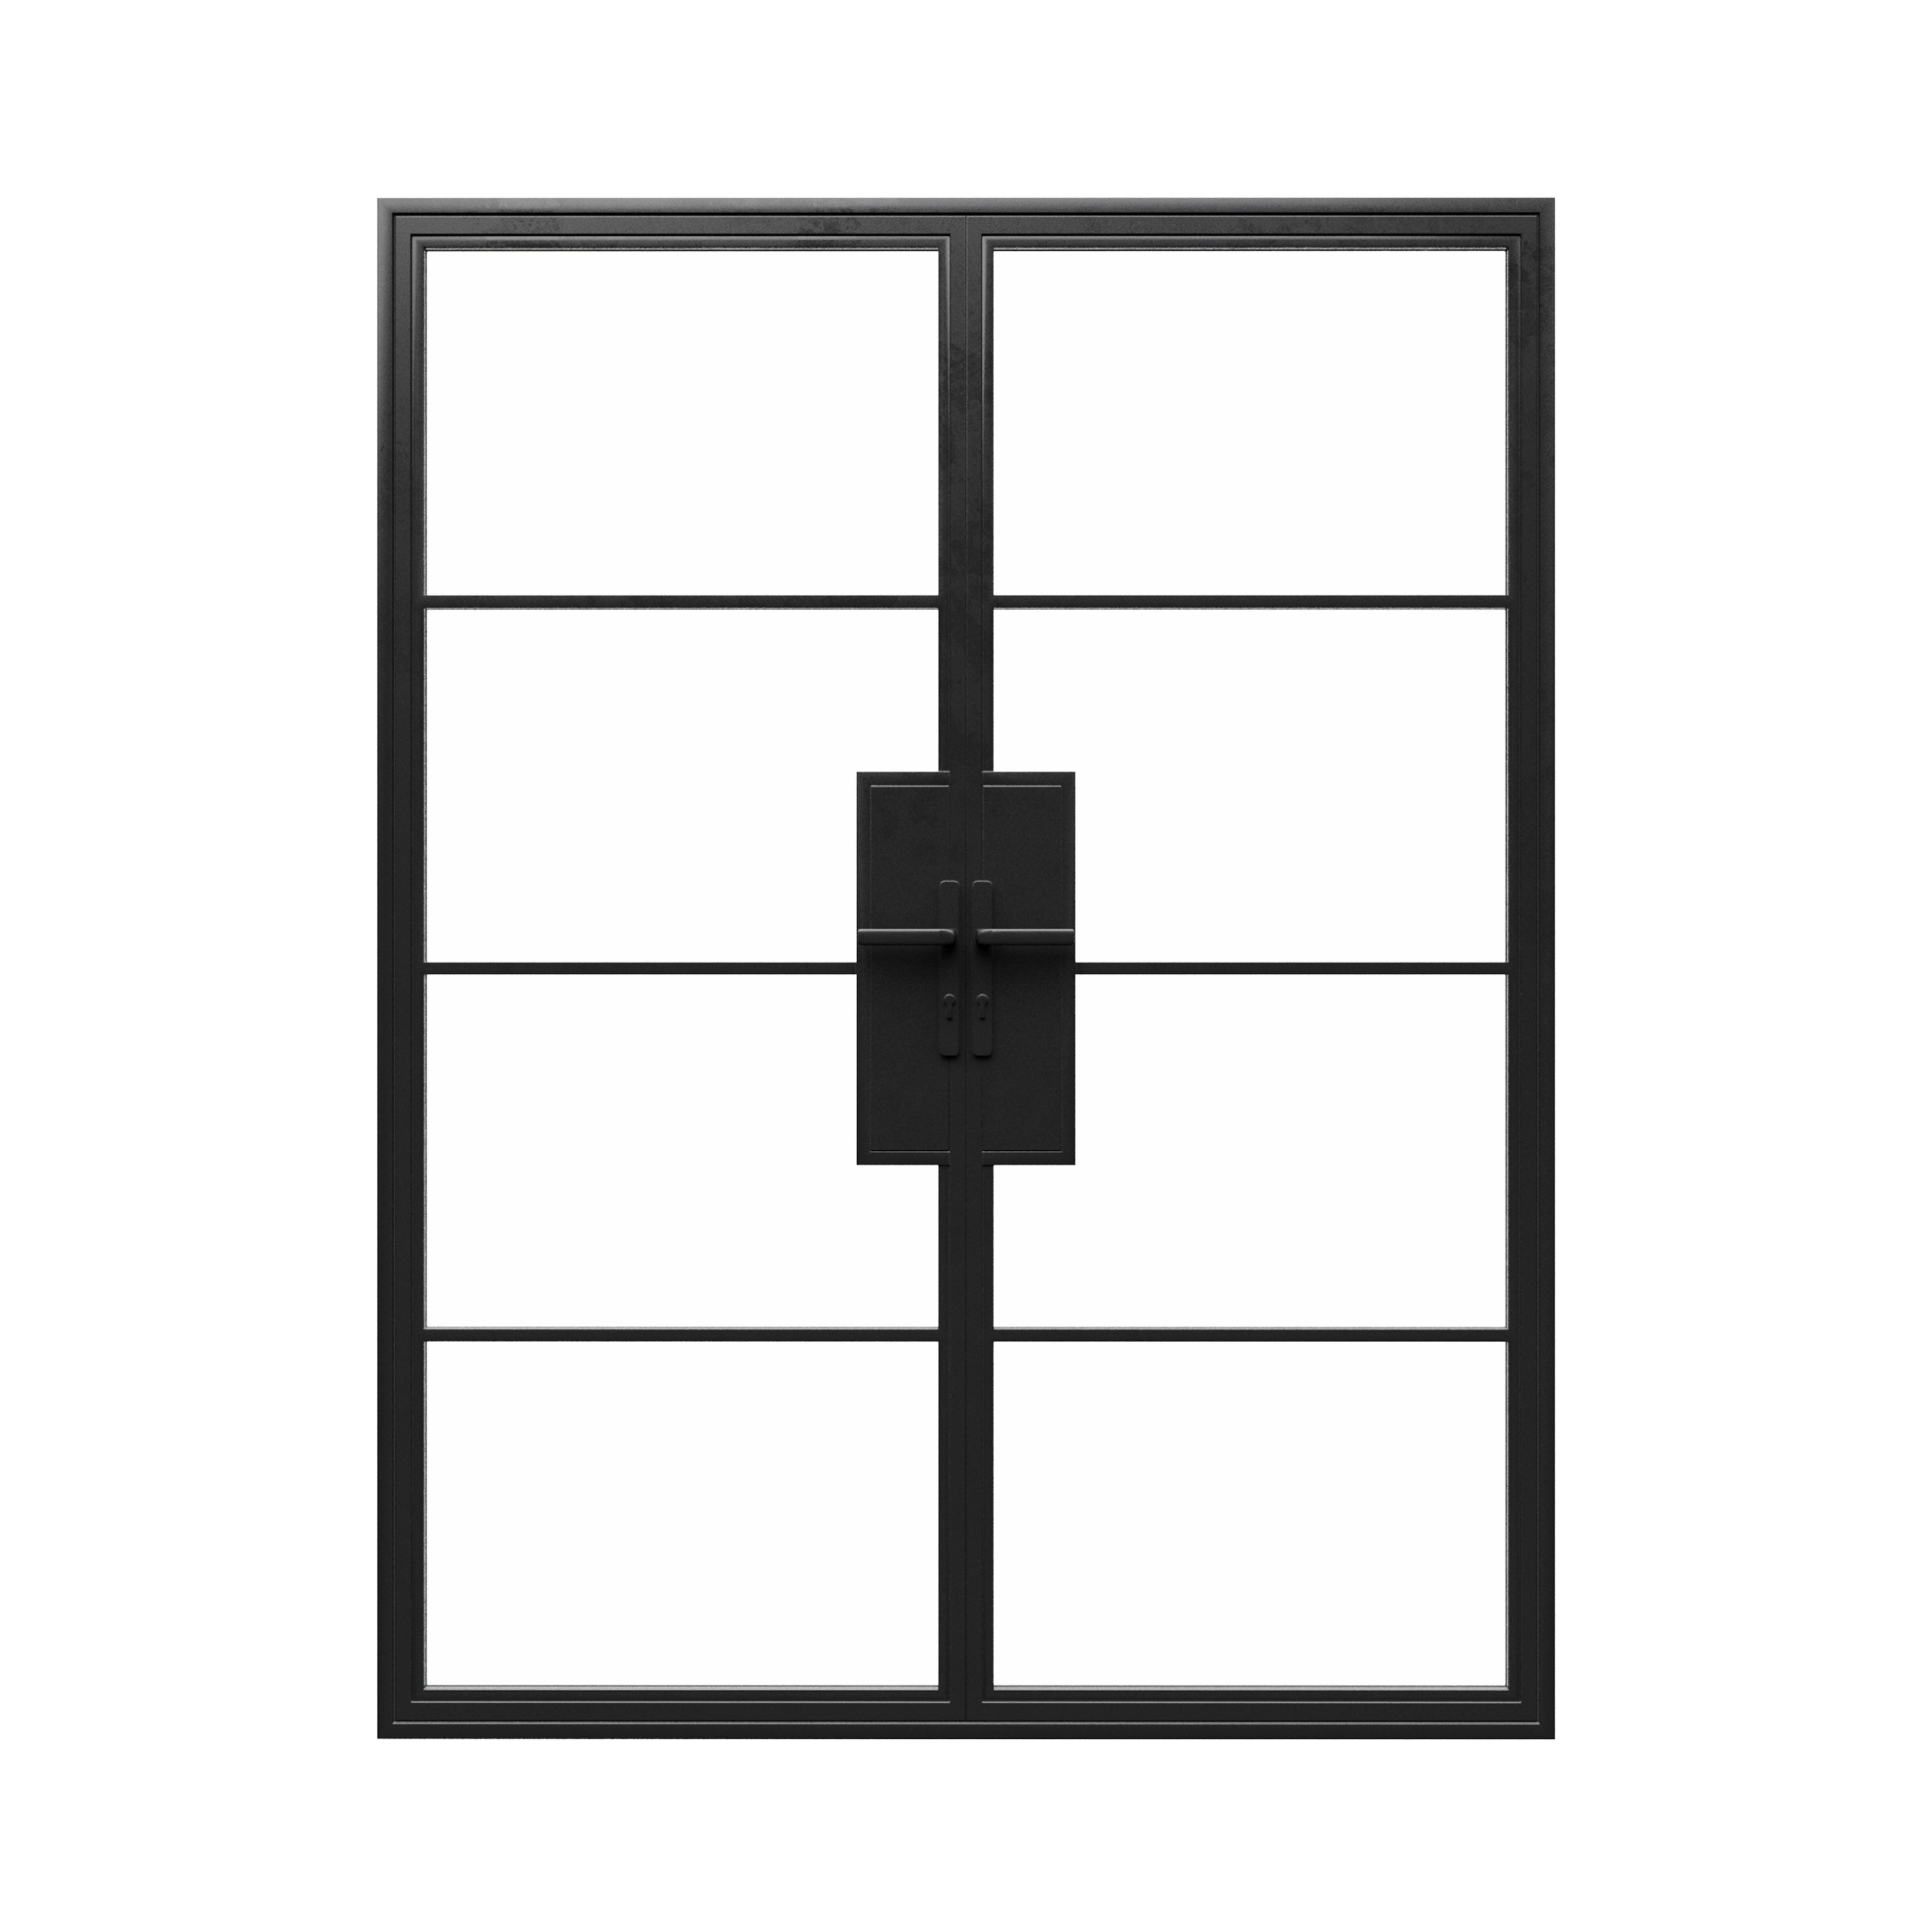 72x96 Double French Doors - Steel Metal - Iron Glass Doors